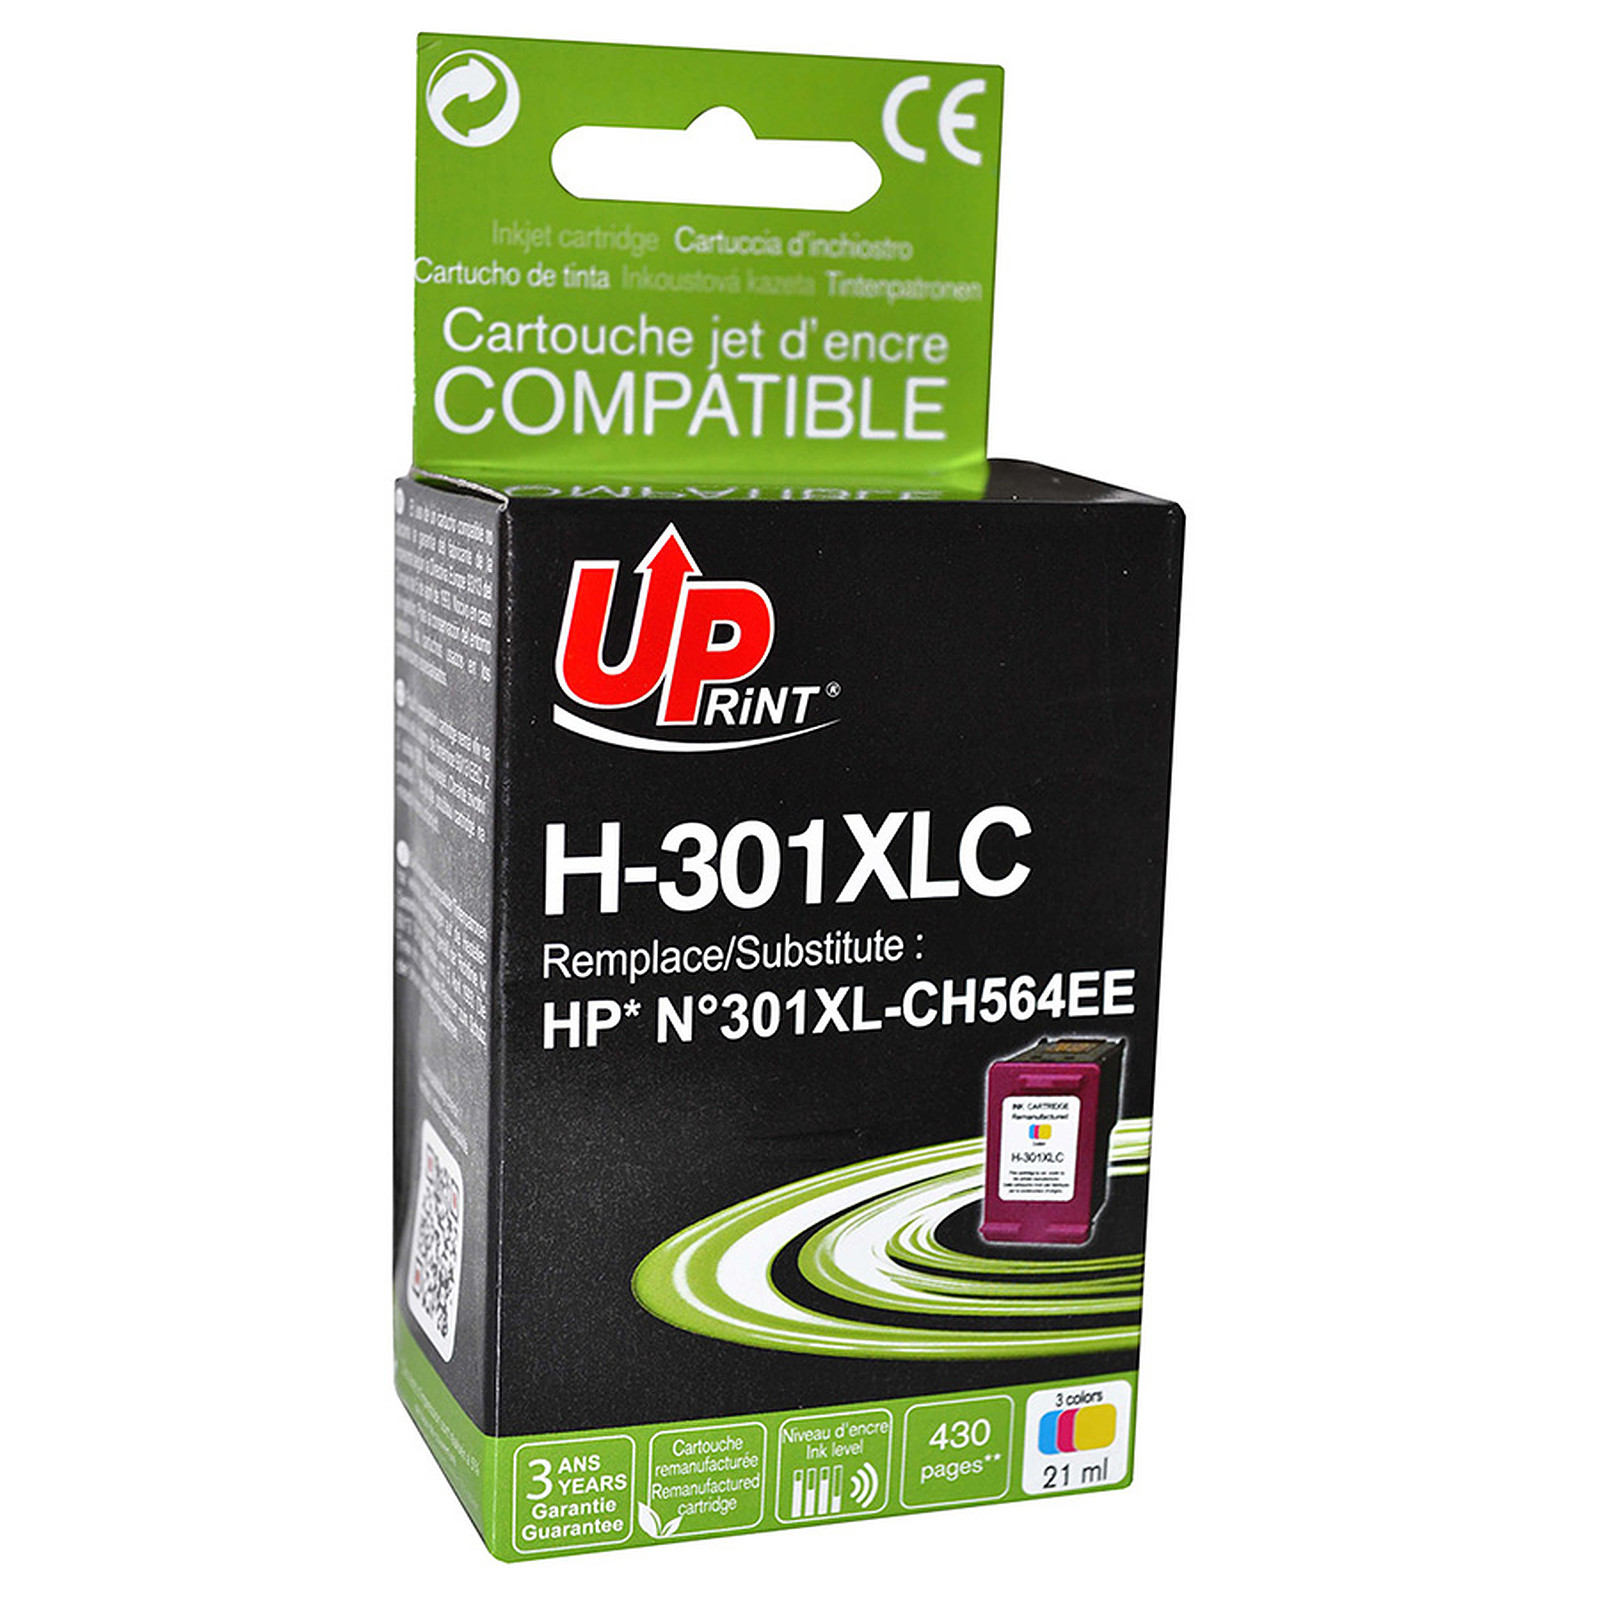 UPrint Cartouche compatible 301XL CH564EE - Cartouche imprimante UPrint